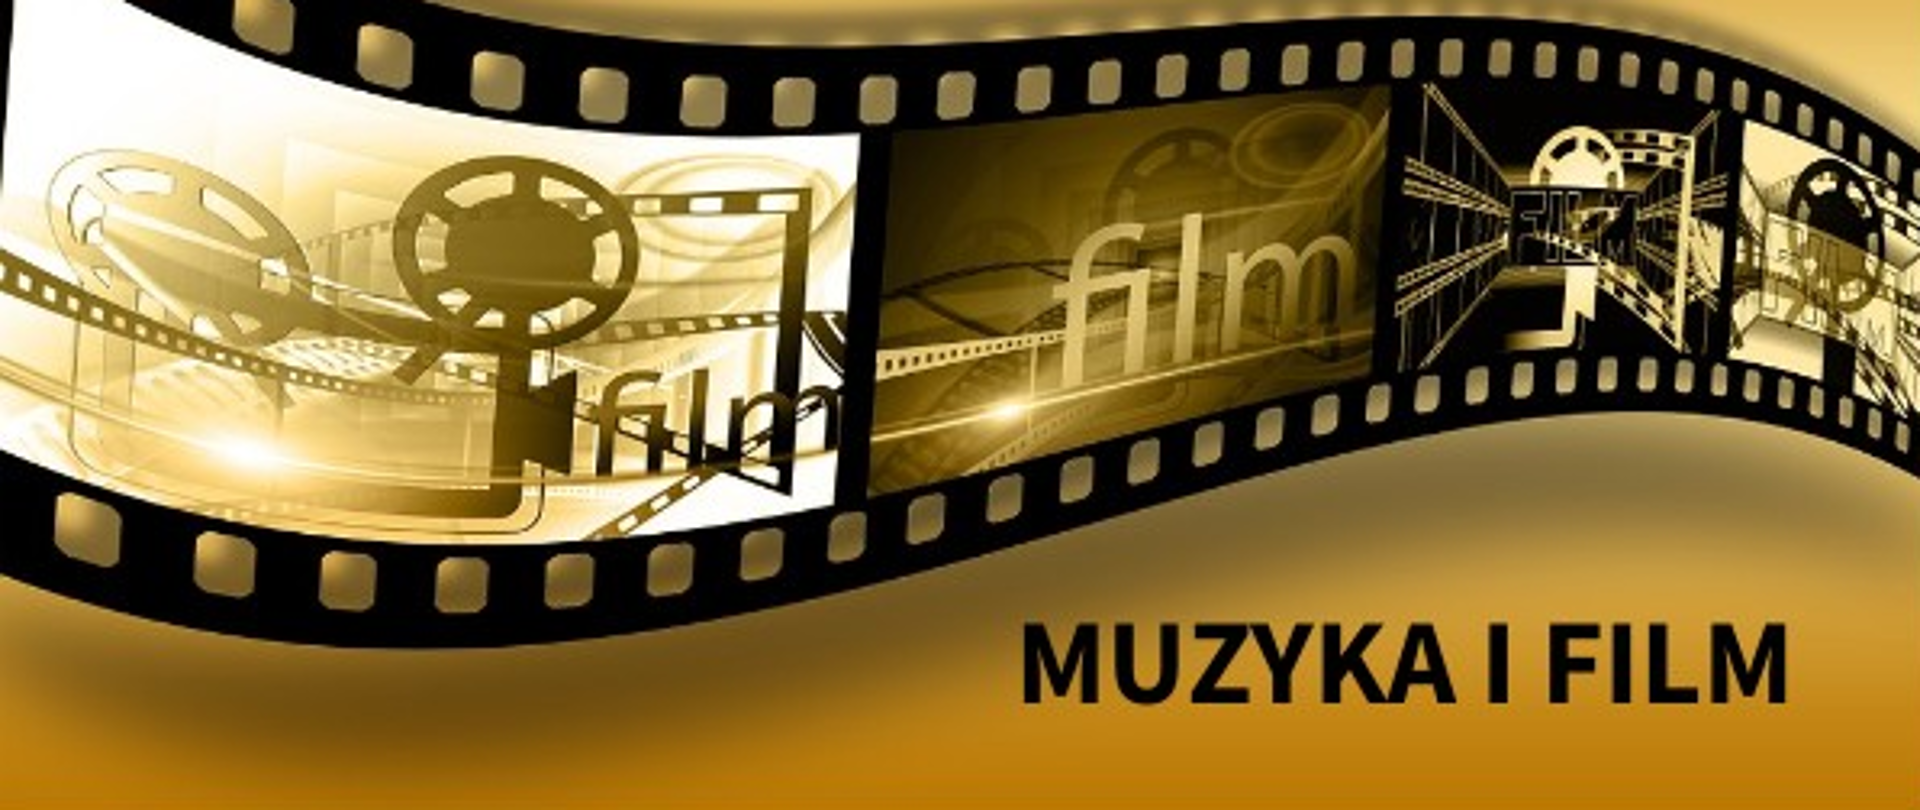 Na złotym tle klisza filmowa. W dolnym prawym rogu hasło: muzyka i film.